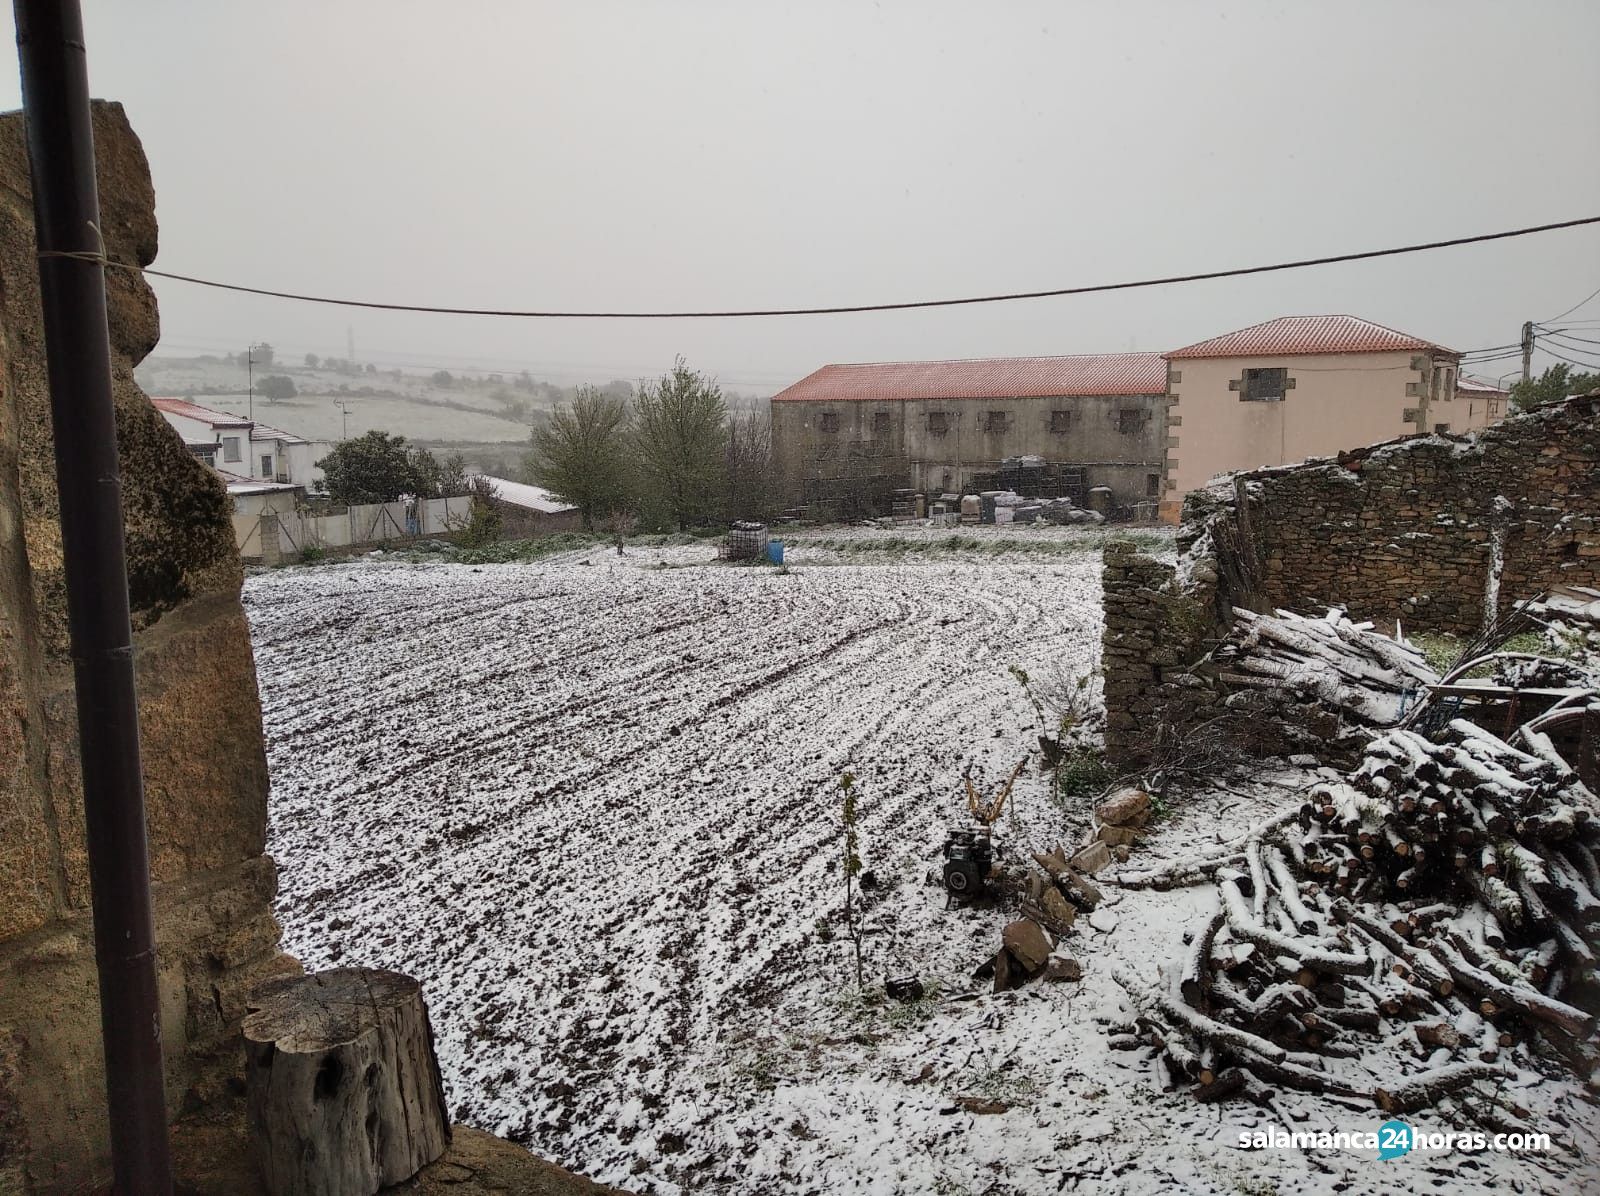  Nieve en Pereña (2) 